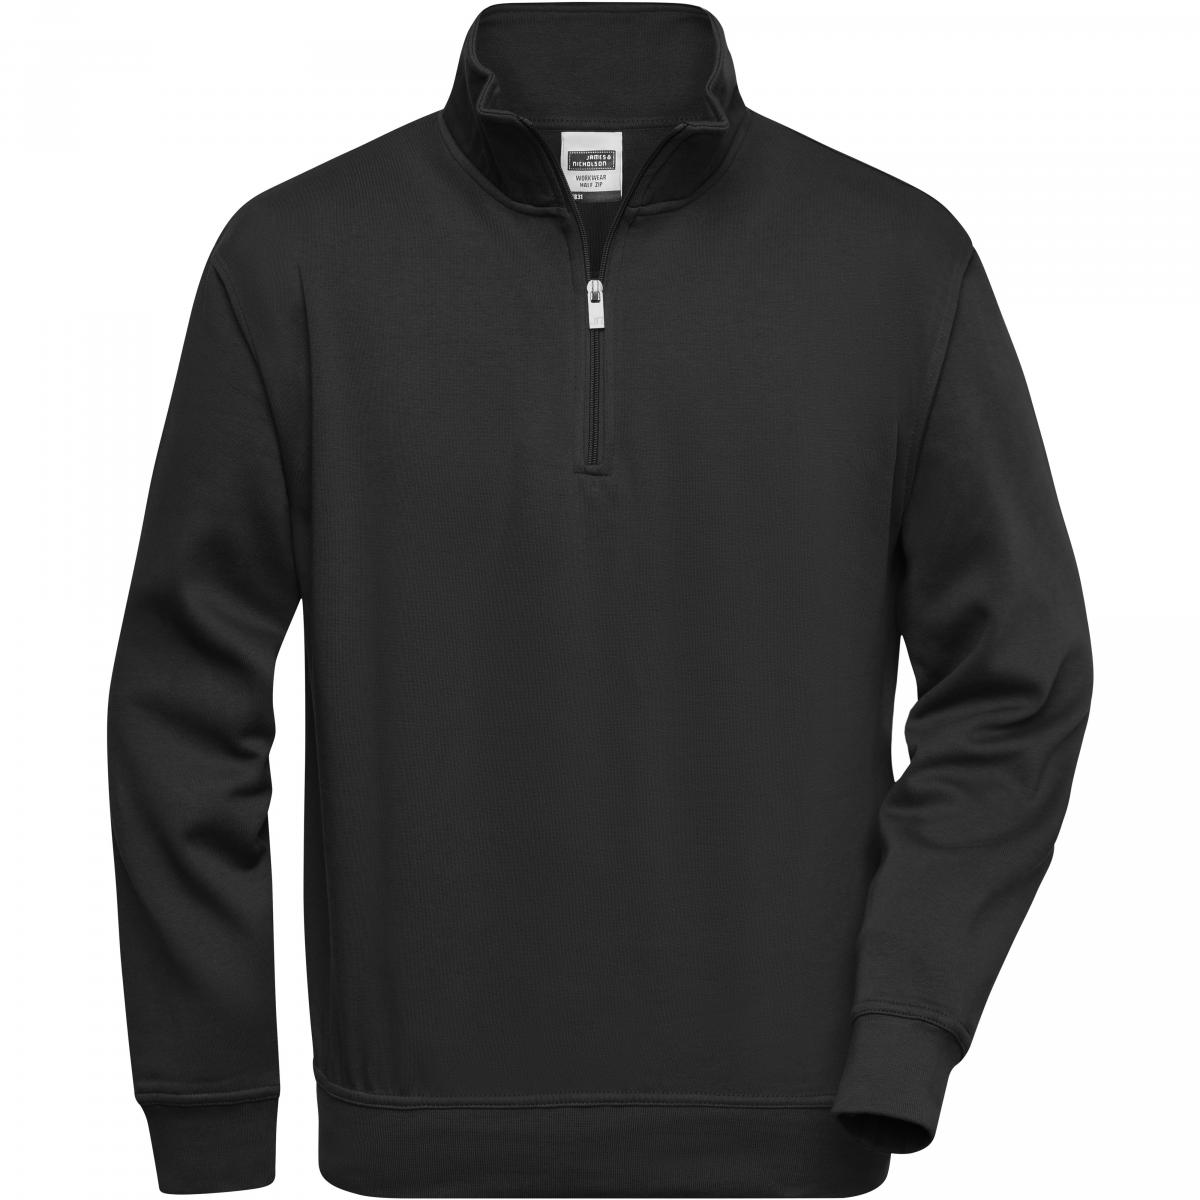 Hersteller: James+Nicholson Herstellernummer: JN831 Artikelbezeichnung: Workwear Half Zip Sweatshirt +Waschbar bis 60 °C Farbe: Black